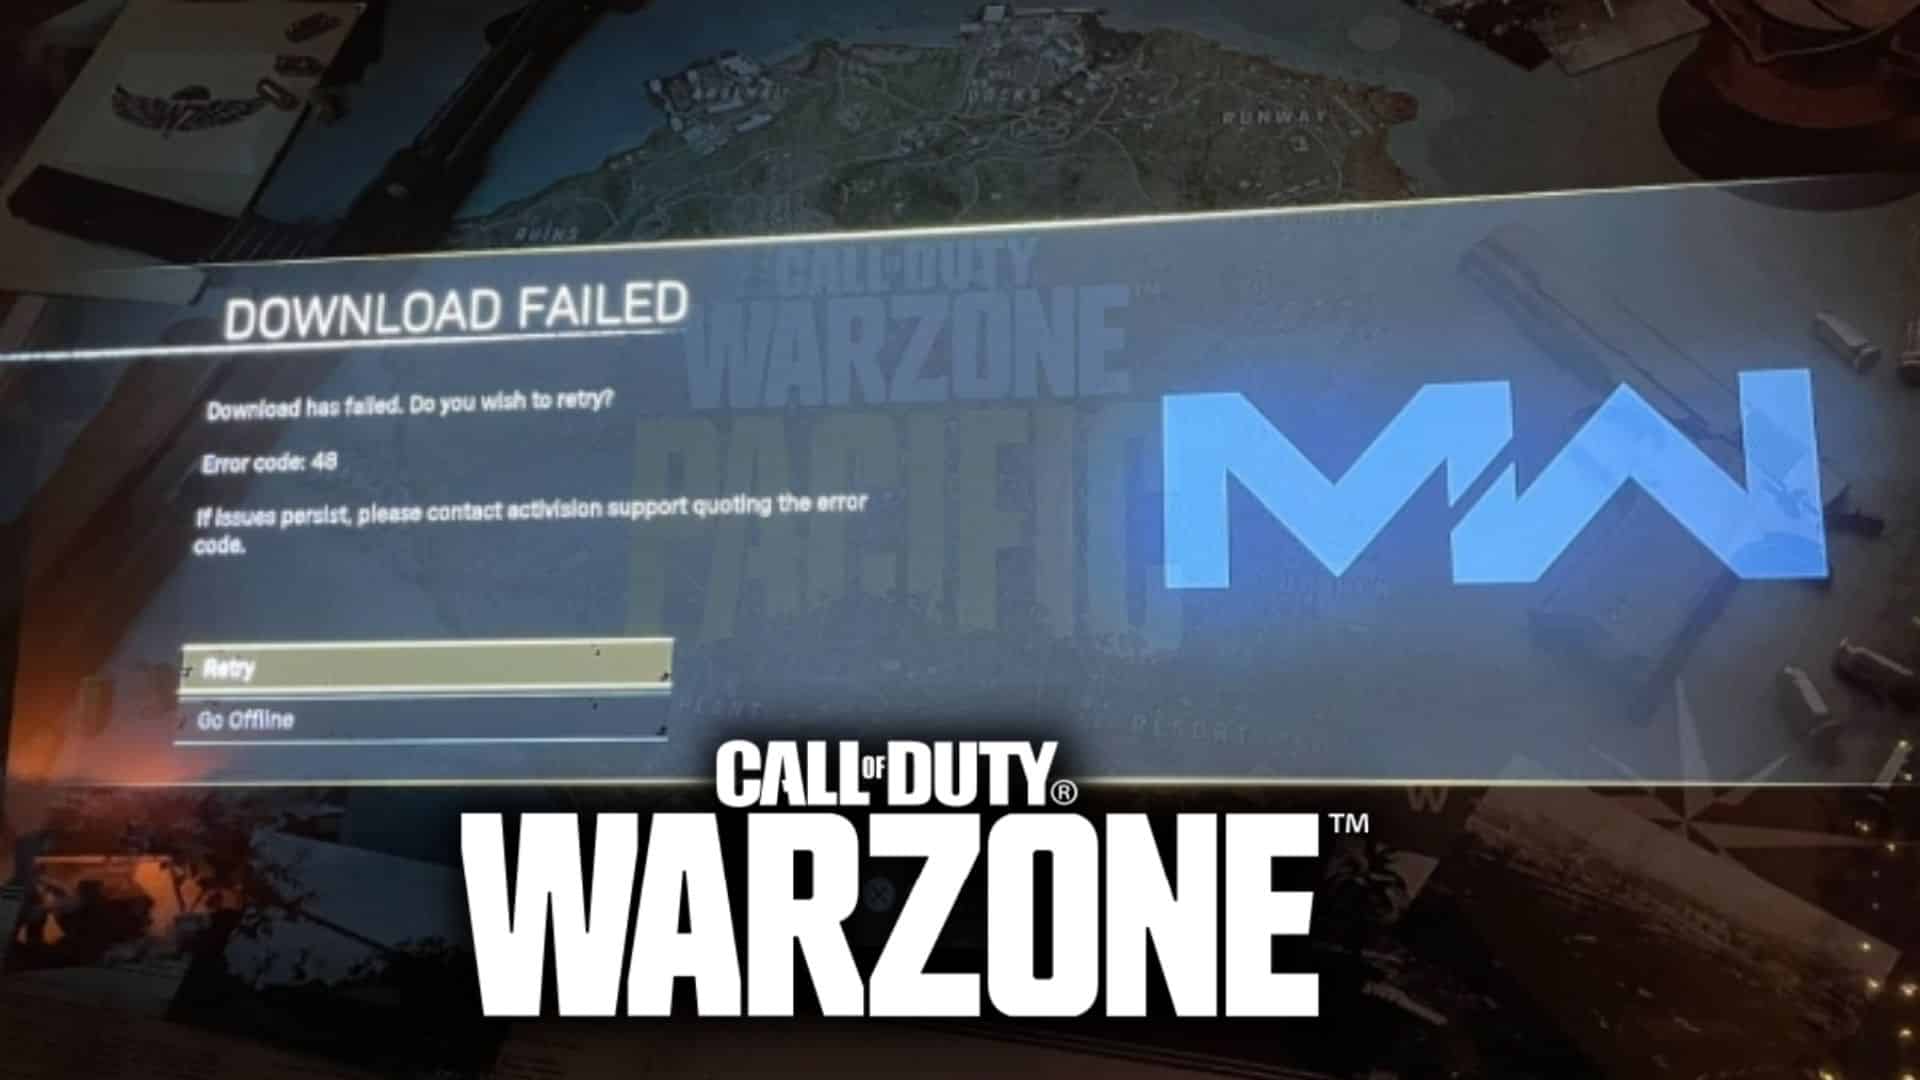 How To Fix Error Code 48 In Call Of Duty Warzone Dexerto 